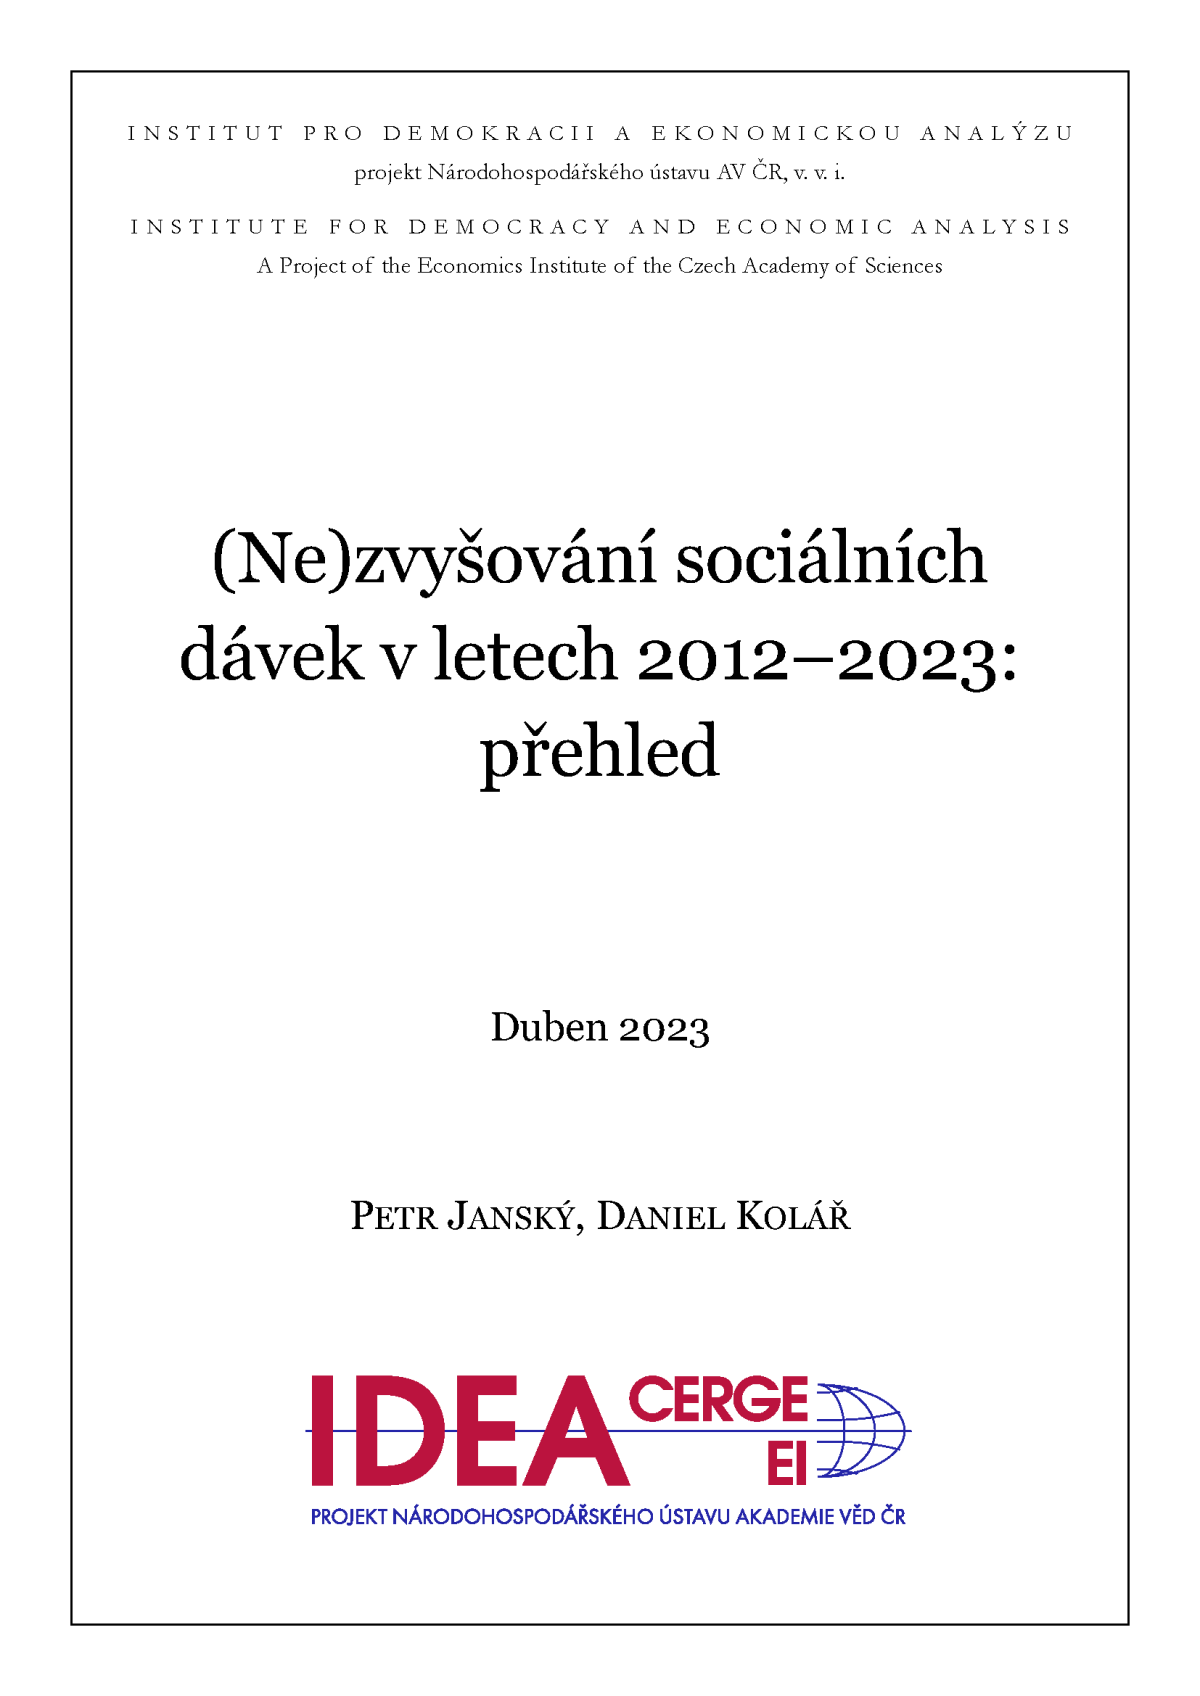 (Ne)zvyšování sociálních dávek v letech 2012–2023: přehled